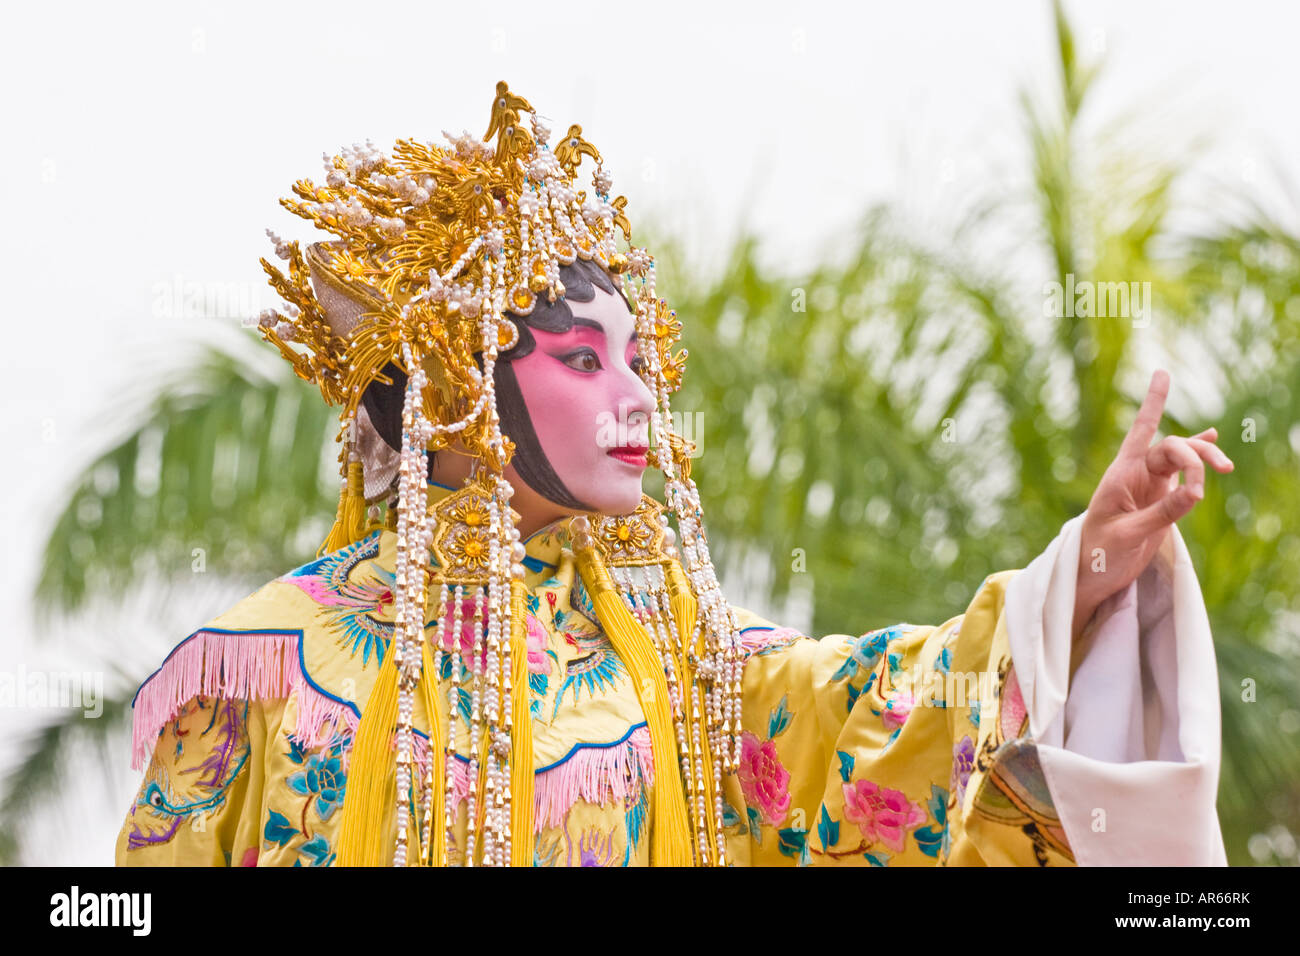 Un Opera Cinese attrice gesticulating durante una performance in Hong Kong. Uno di una serie di immagini con lo stesso fotografo. Foto Stock